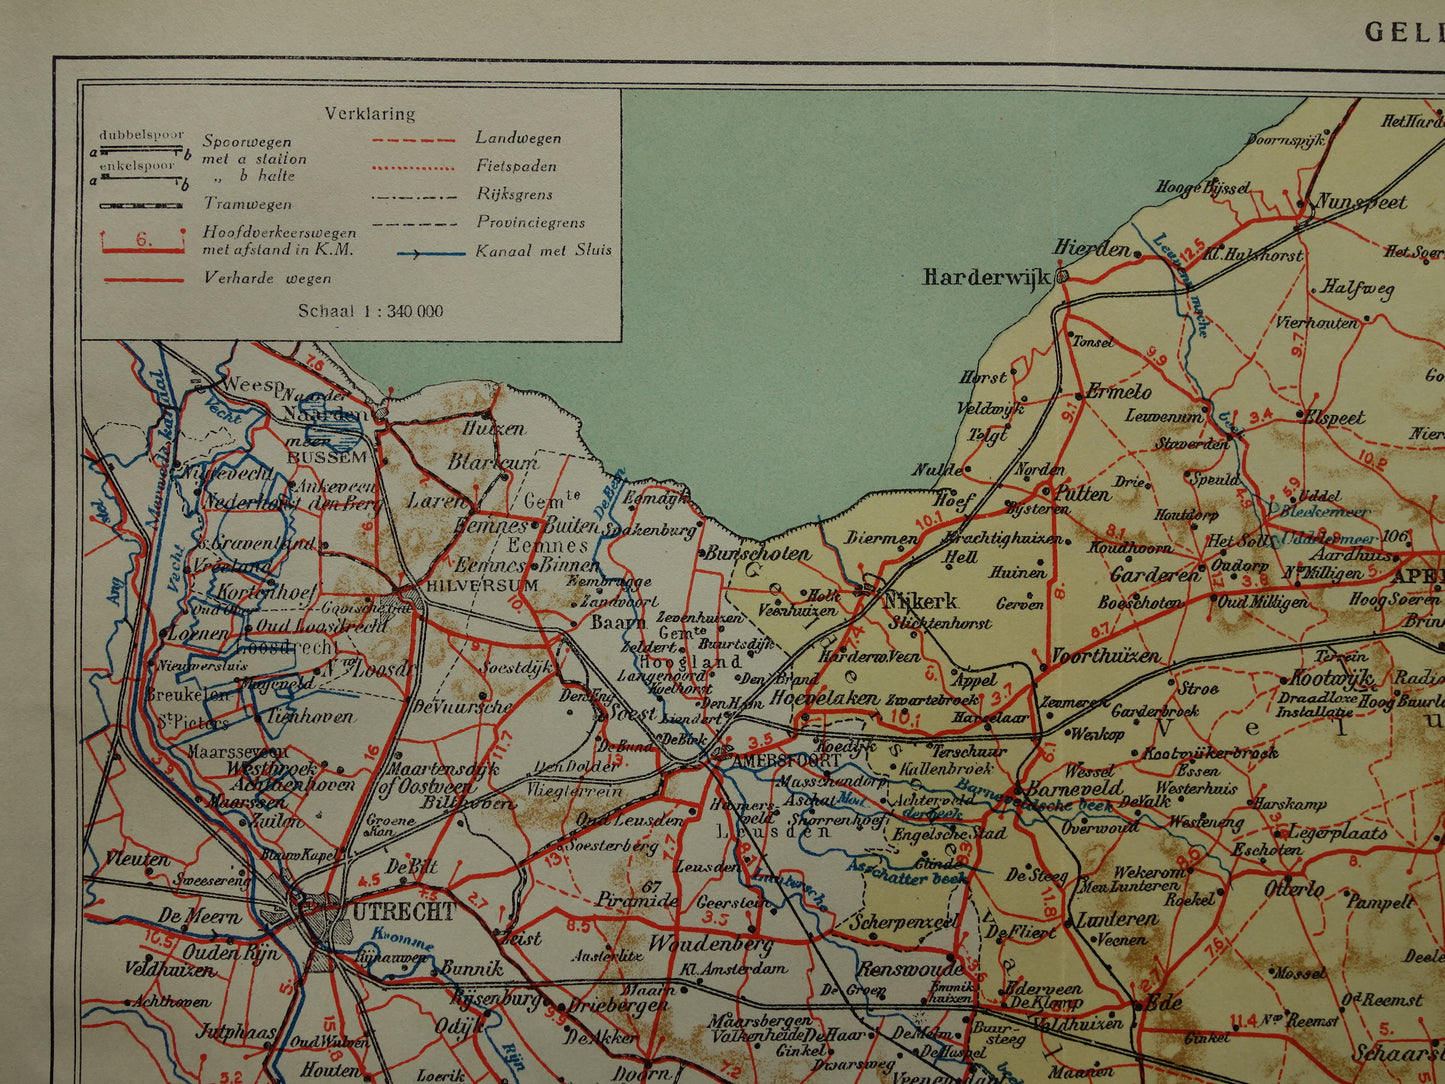 GELDERLAND Oude kaart van de provincie Gelderland uit 1928 originele vintage historische landkaart Apeldoorn Arnhem Nijmegen